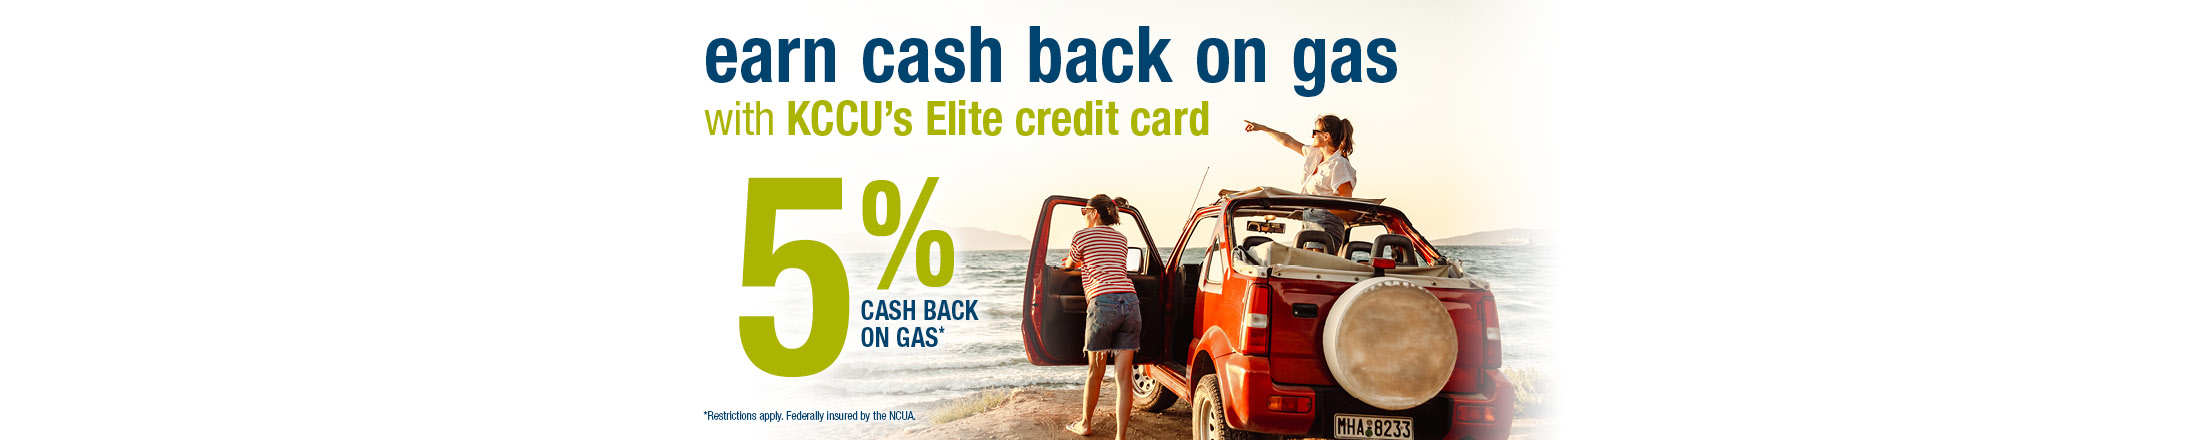 5% Cash back on gas promotion